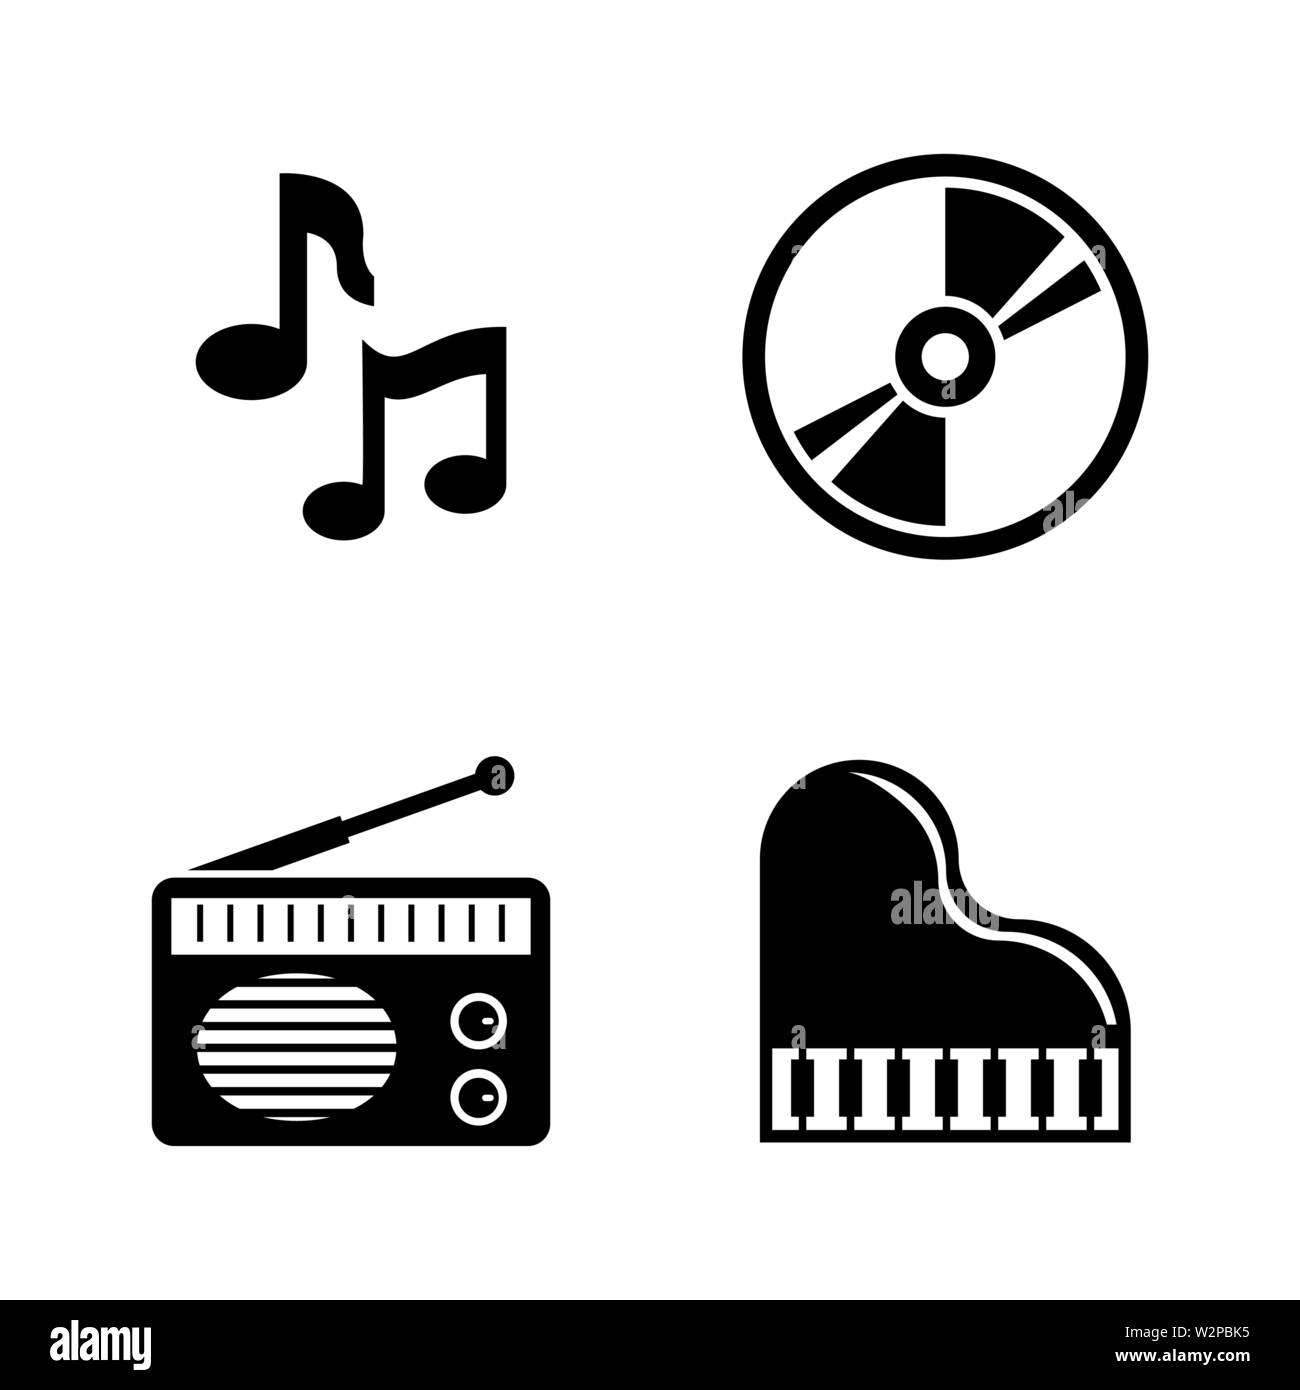 Thật tuyệt vời khi có Vector Icons Music giúp bạn bổ sung những biểu tượng để trang trí cho video của mình. Tạo sự khác biệt cho video của bạn với những biểu tượng độc đáo và thu hút sự chú ý của khán giả.